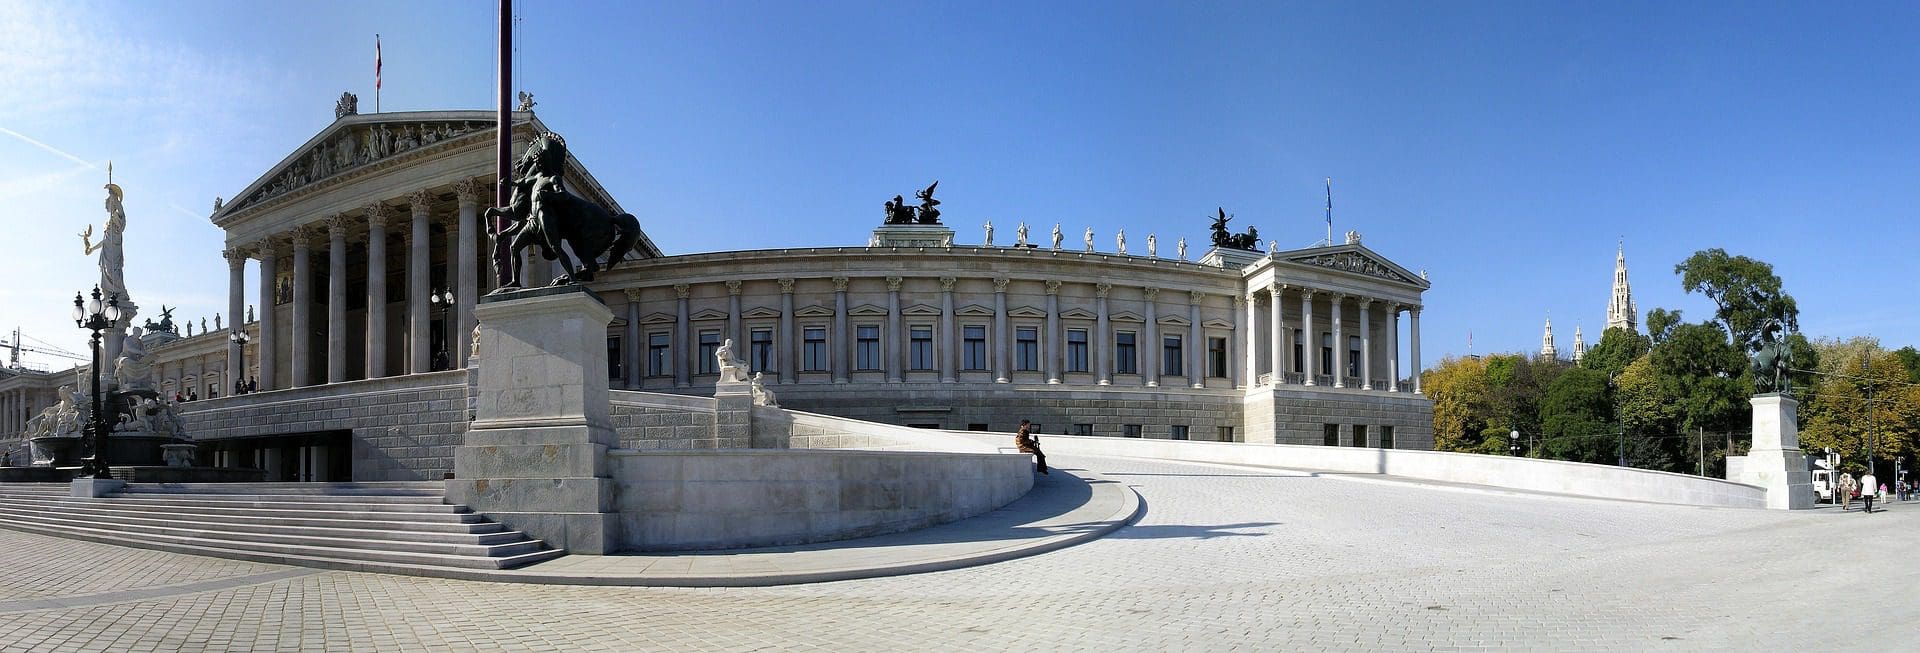 Clădirea Parlamentului din Viena